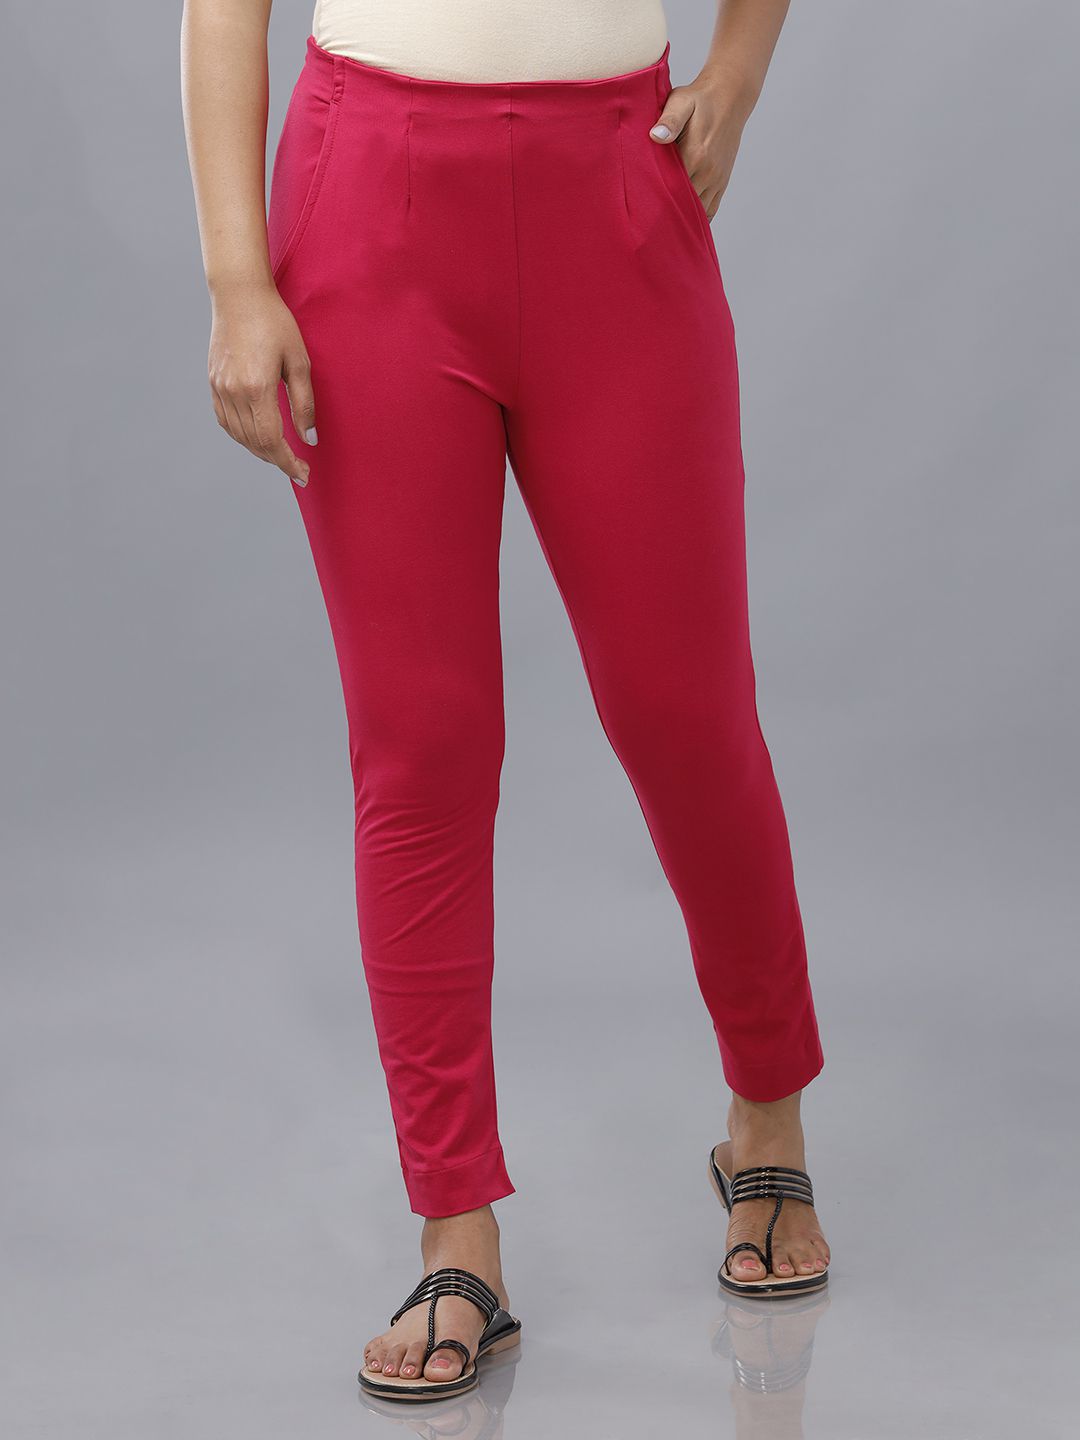     			De Moza - Pink Cotton Slim Women's Cigarette Pants ( Pack of 1 )